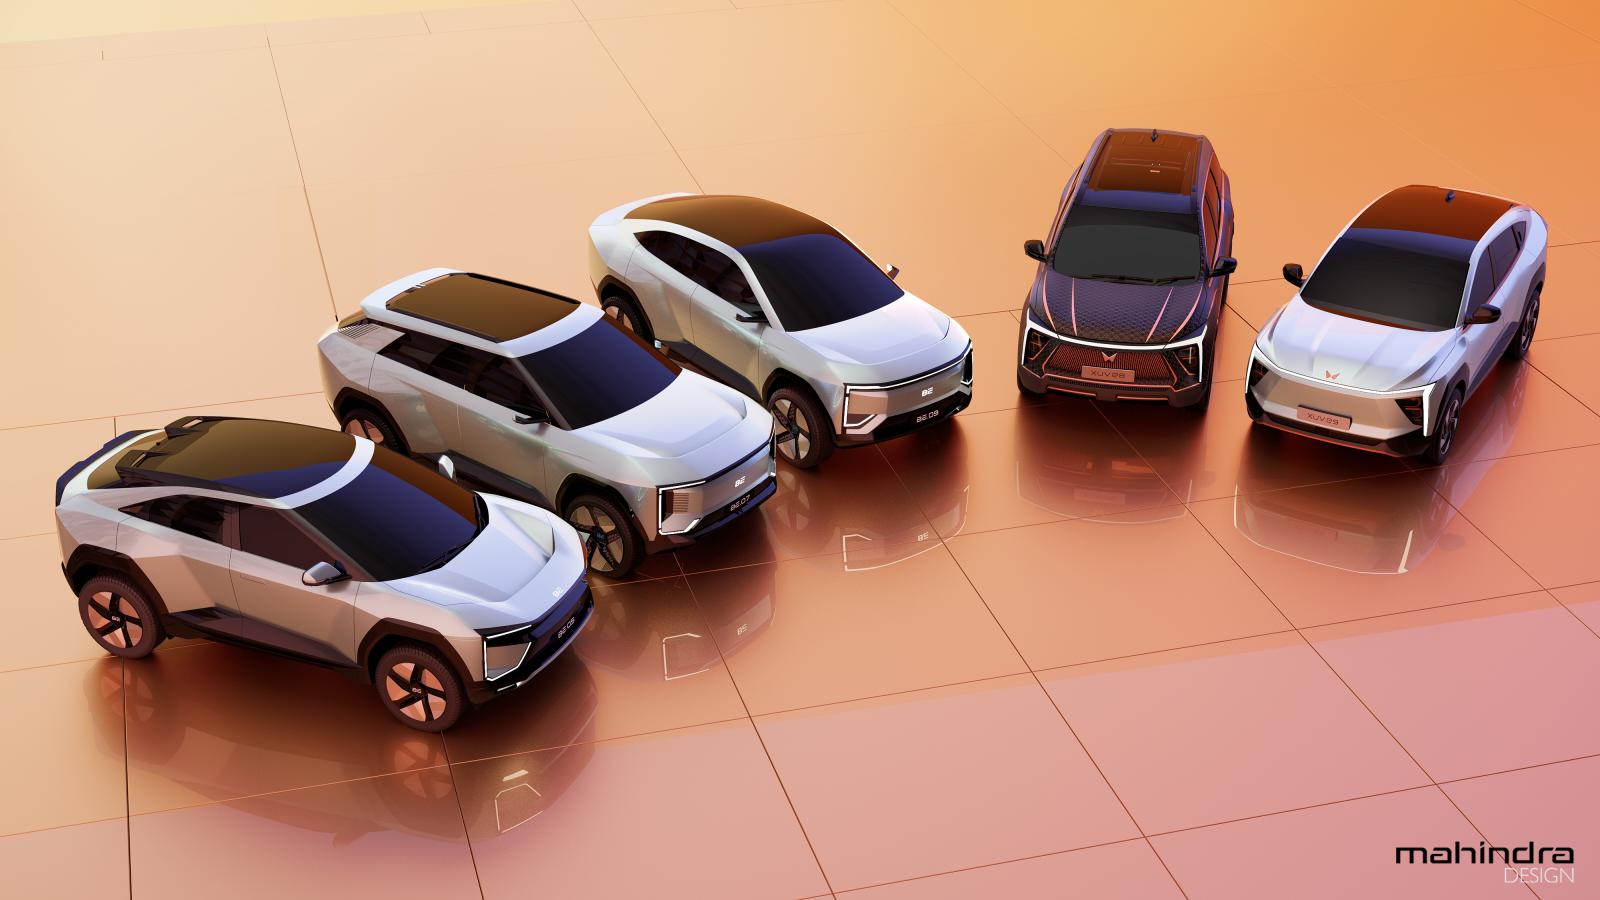 Mahindra annonce cinq SUV électriques avec des composants Volkswagen